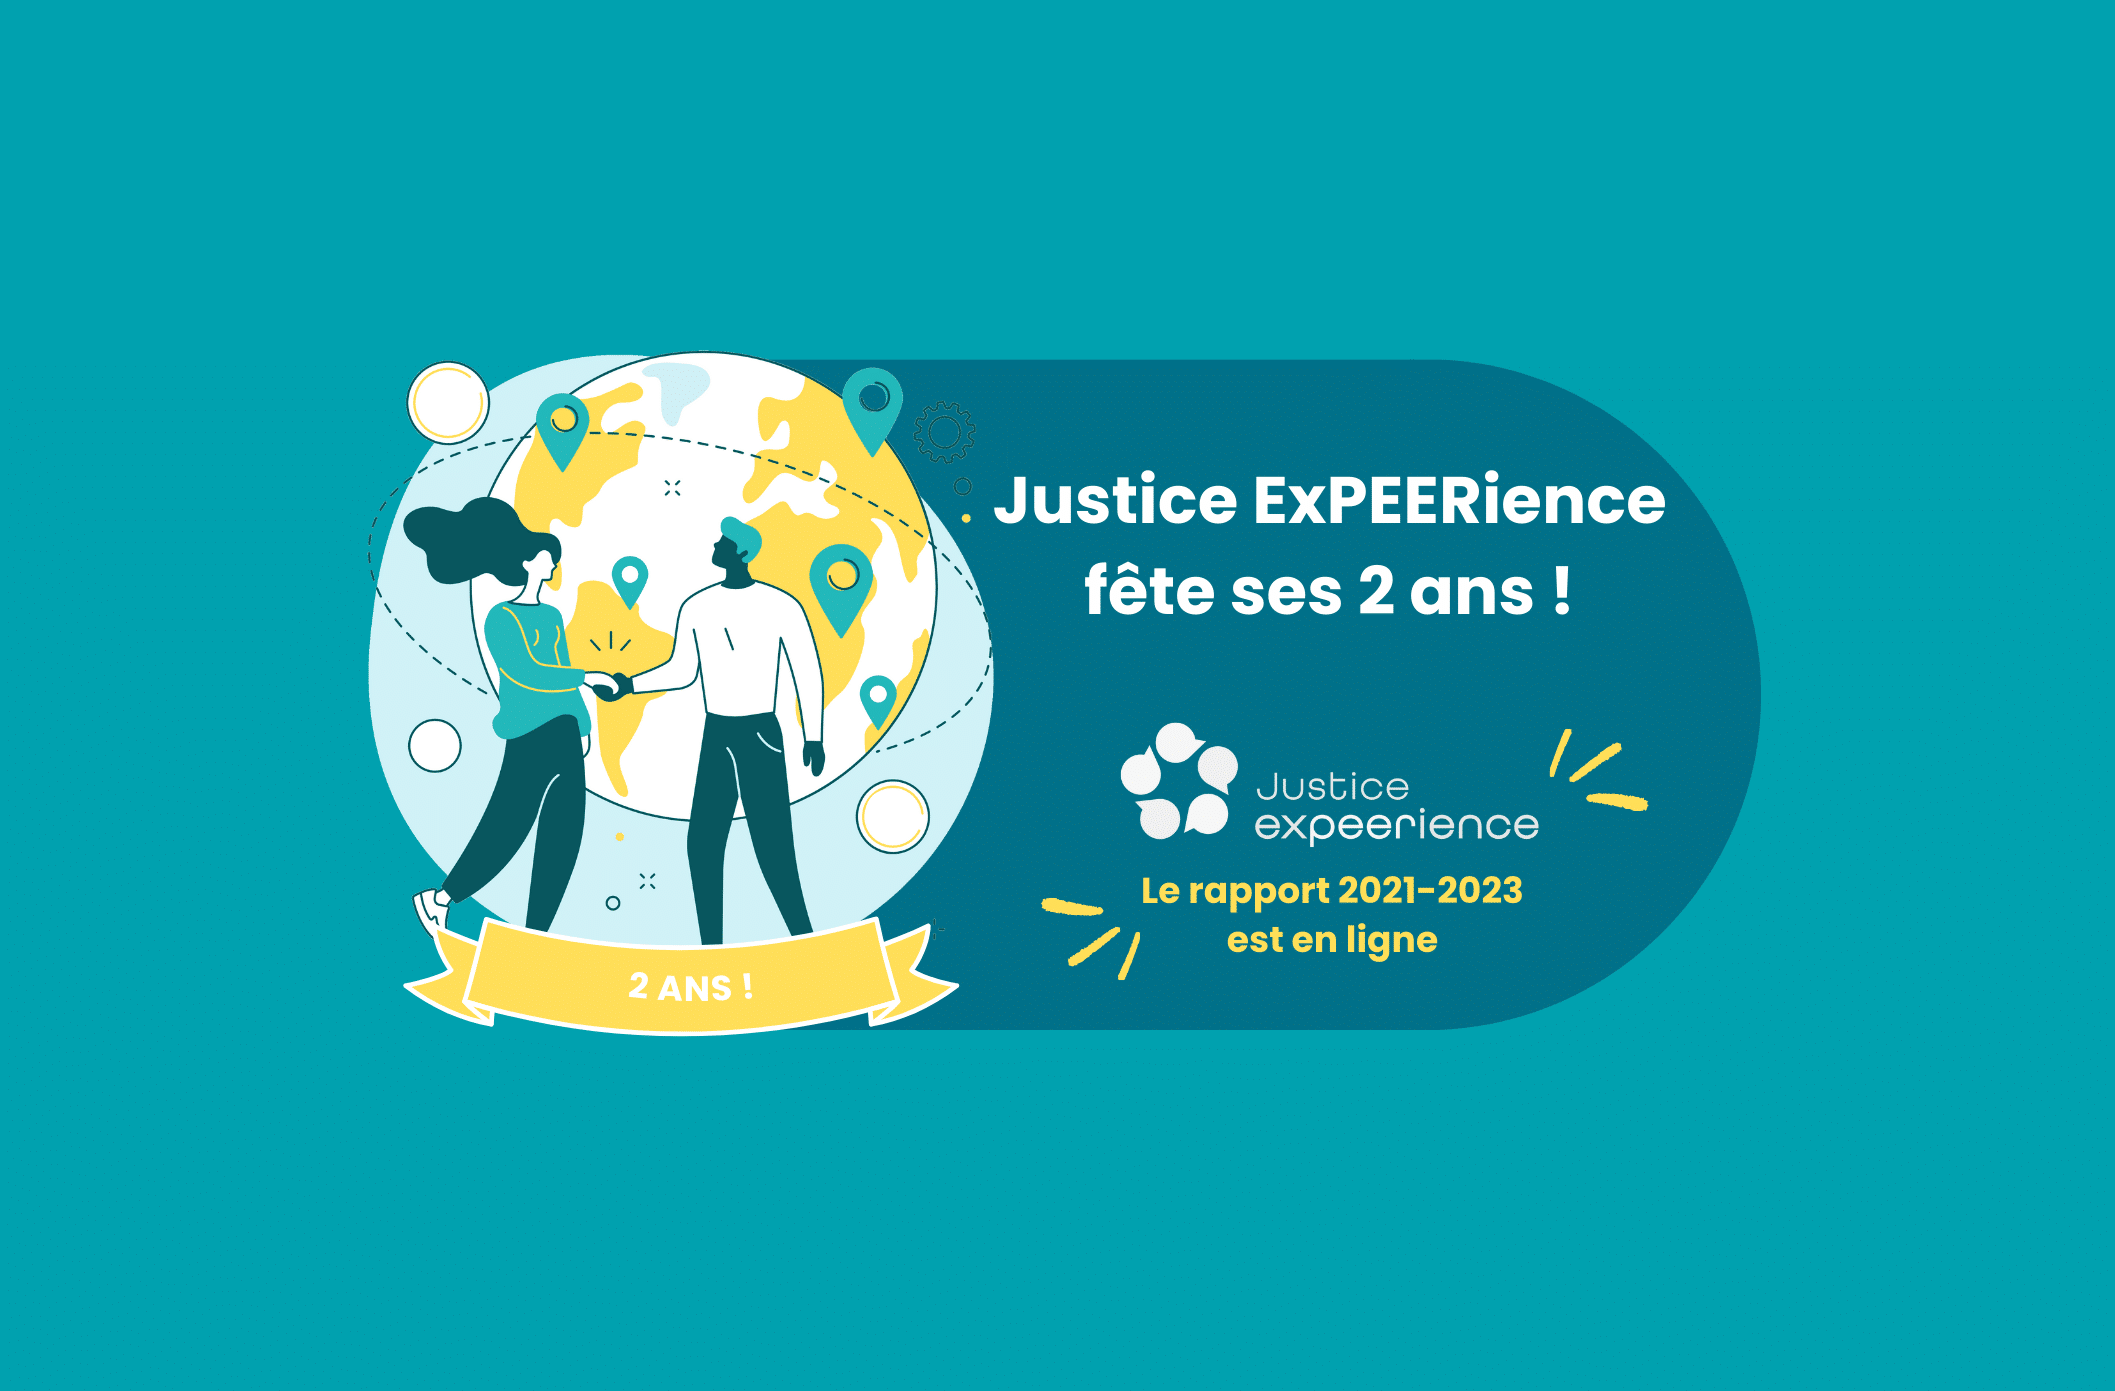 Justice ExPEERience, le réseau de promotion des droits humains lancé par ASF, fête ses deux ans